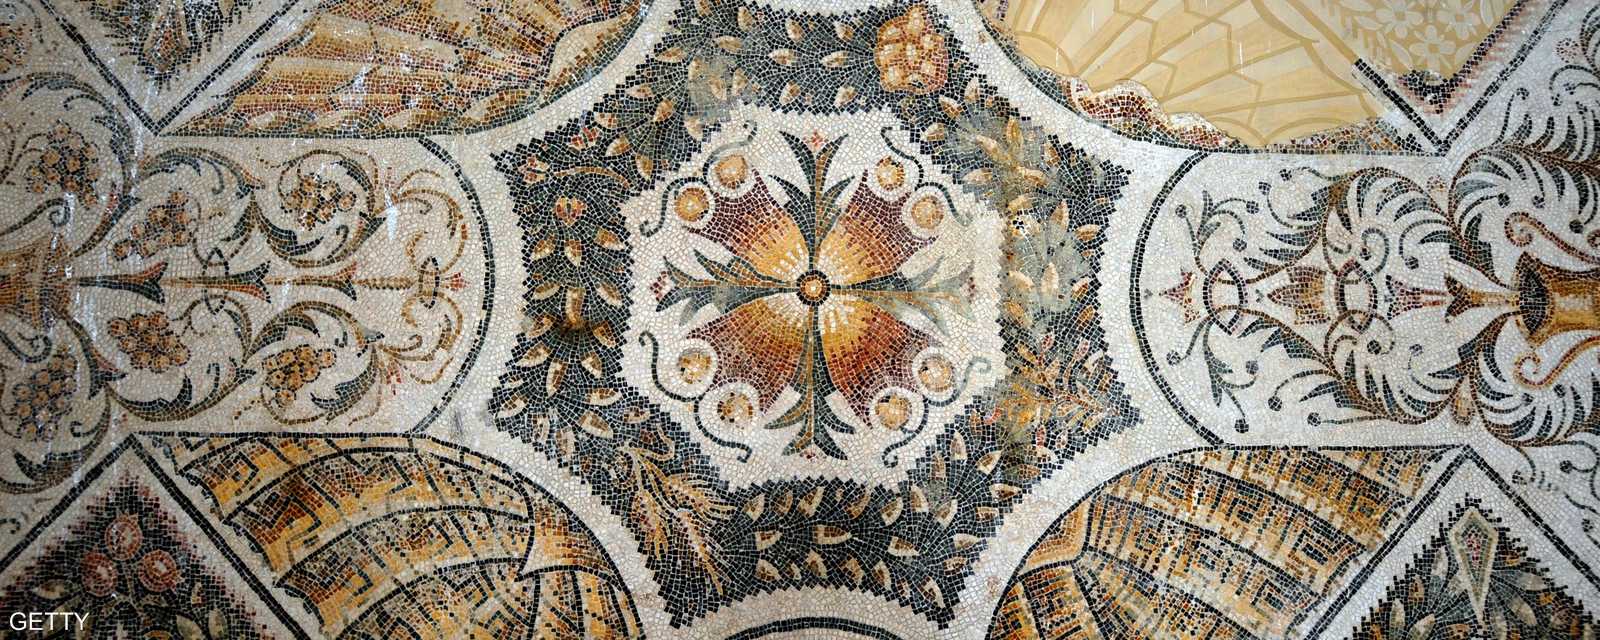 ثاني متحف في العالم بالنسبة إلى فن الفسيفساء الرومانية بعد متحف فسيفساء زيوغما في تركيا